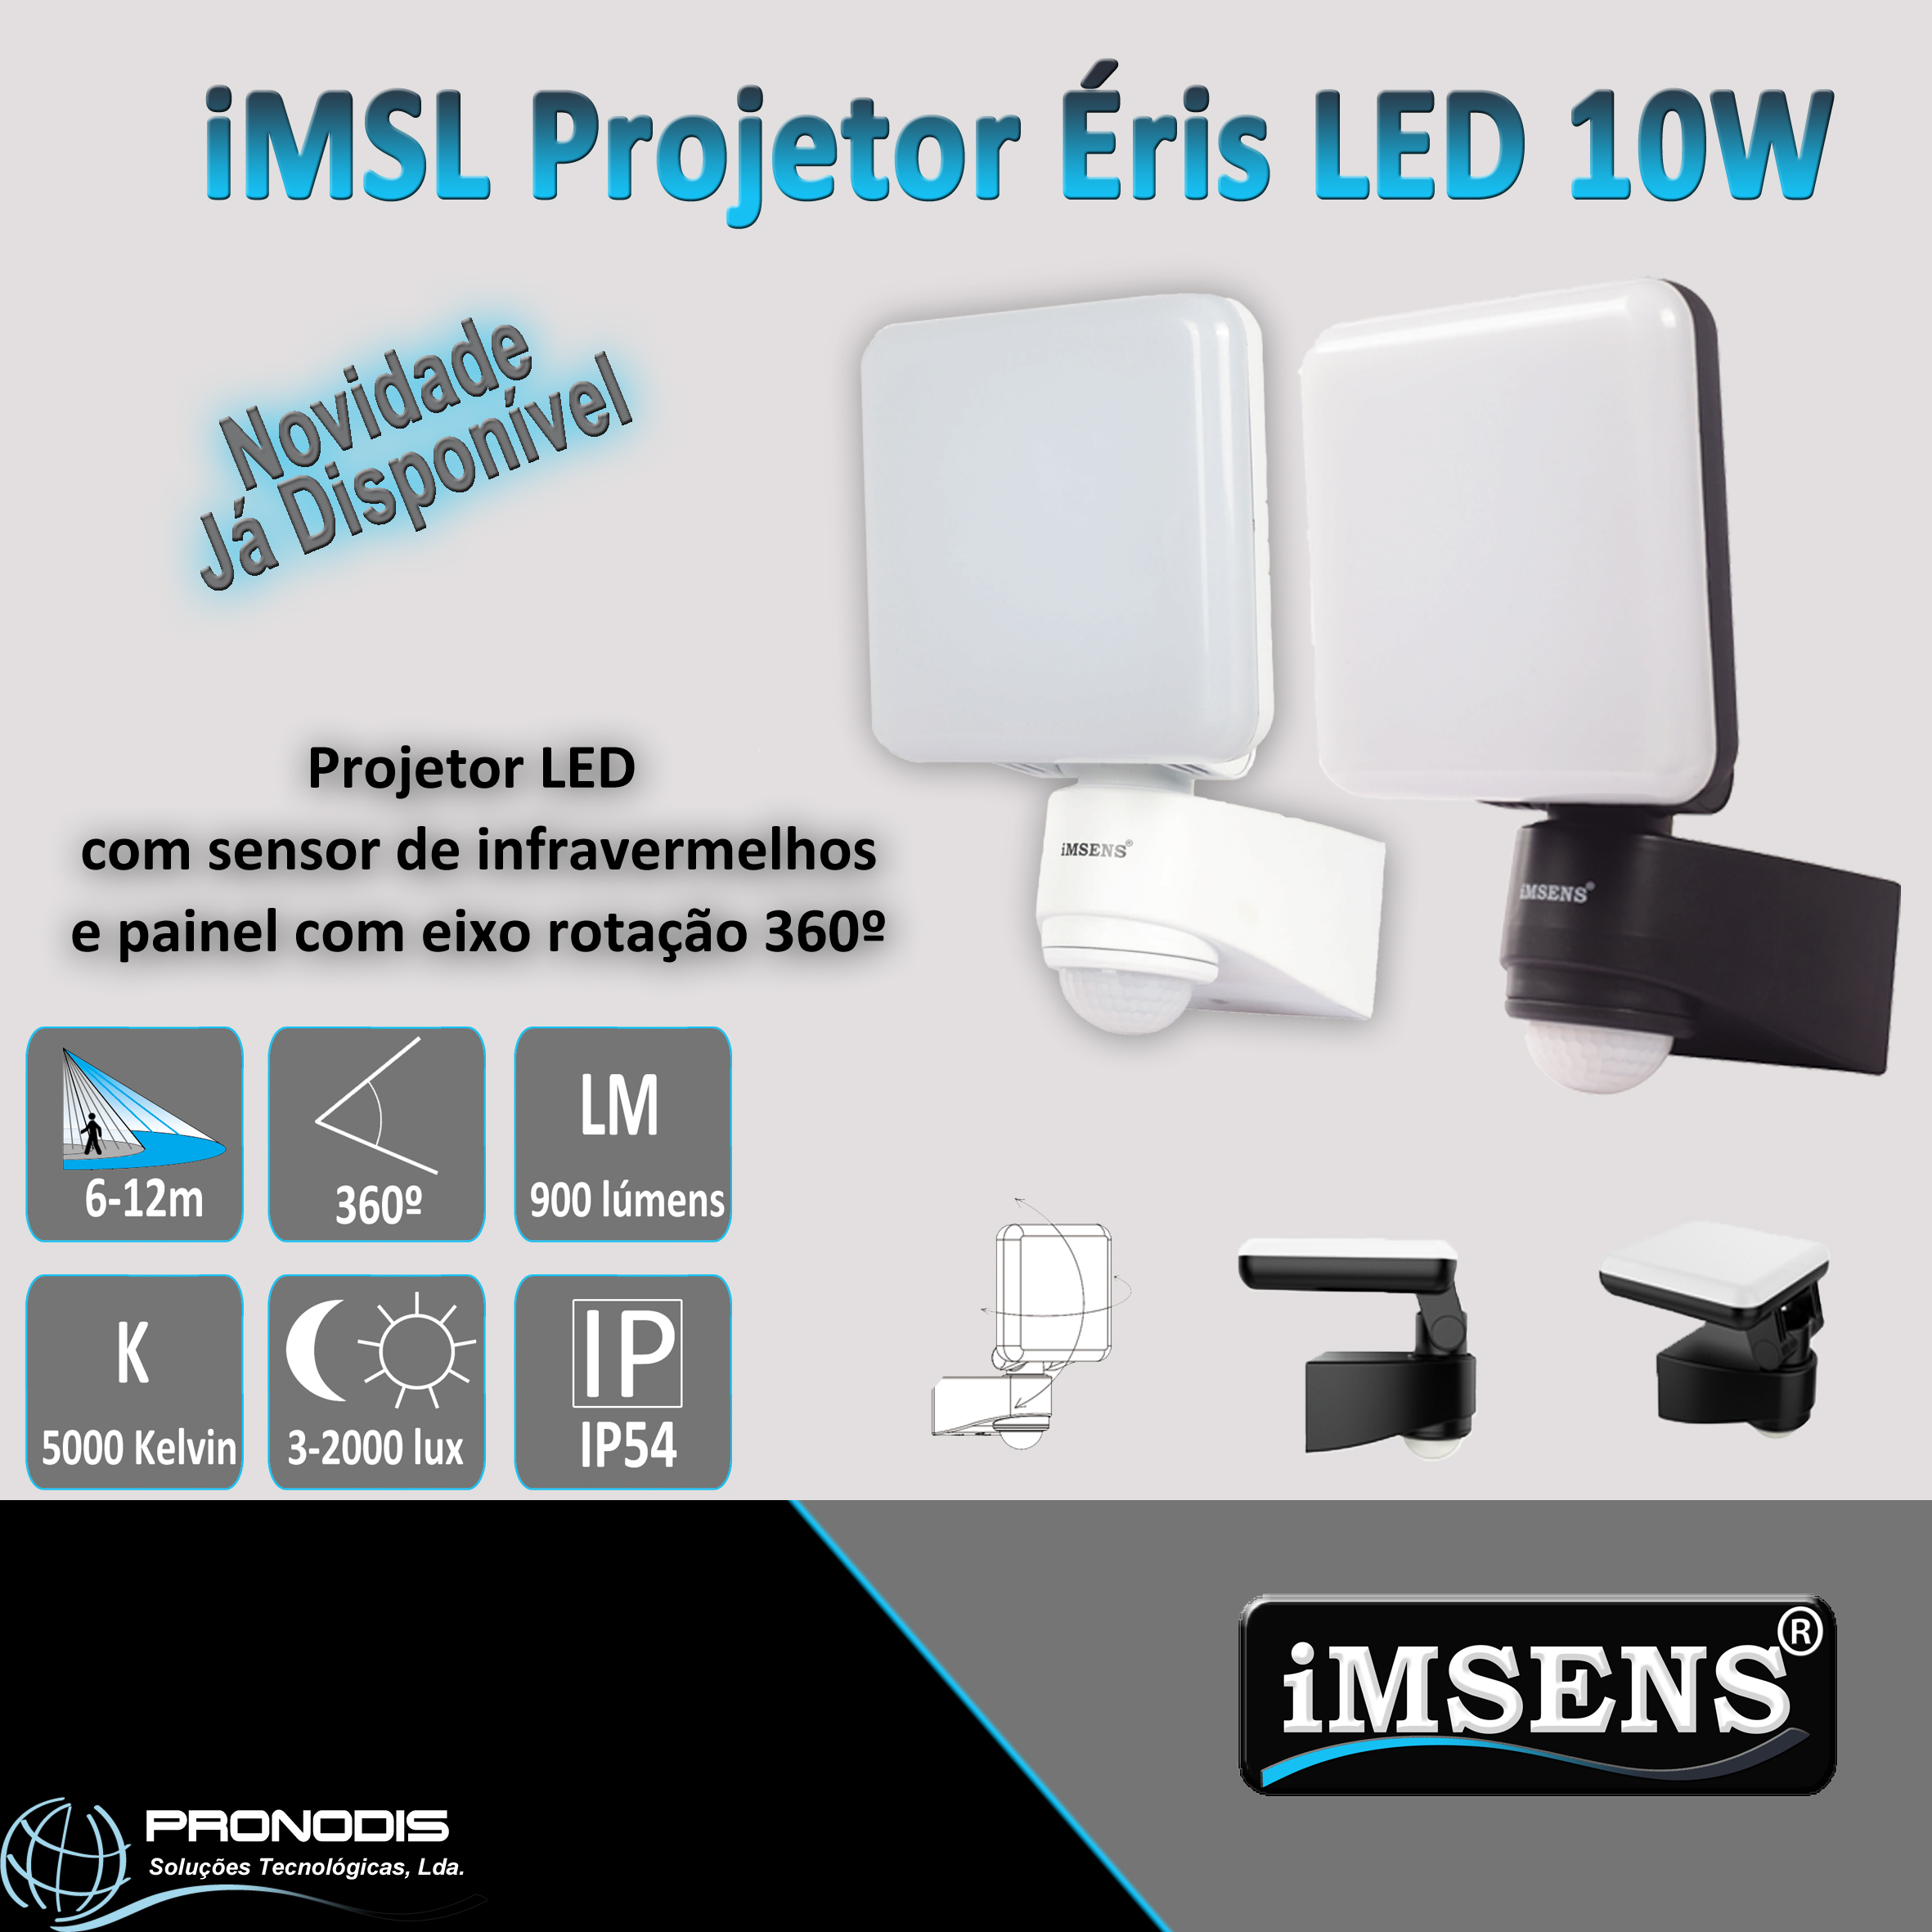 Já se encontra disponível o Novo Projetor LED da iMSENS - Projetor Éris Projetor LED 10W com sensor de infravermelhos